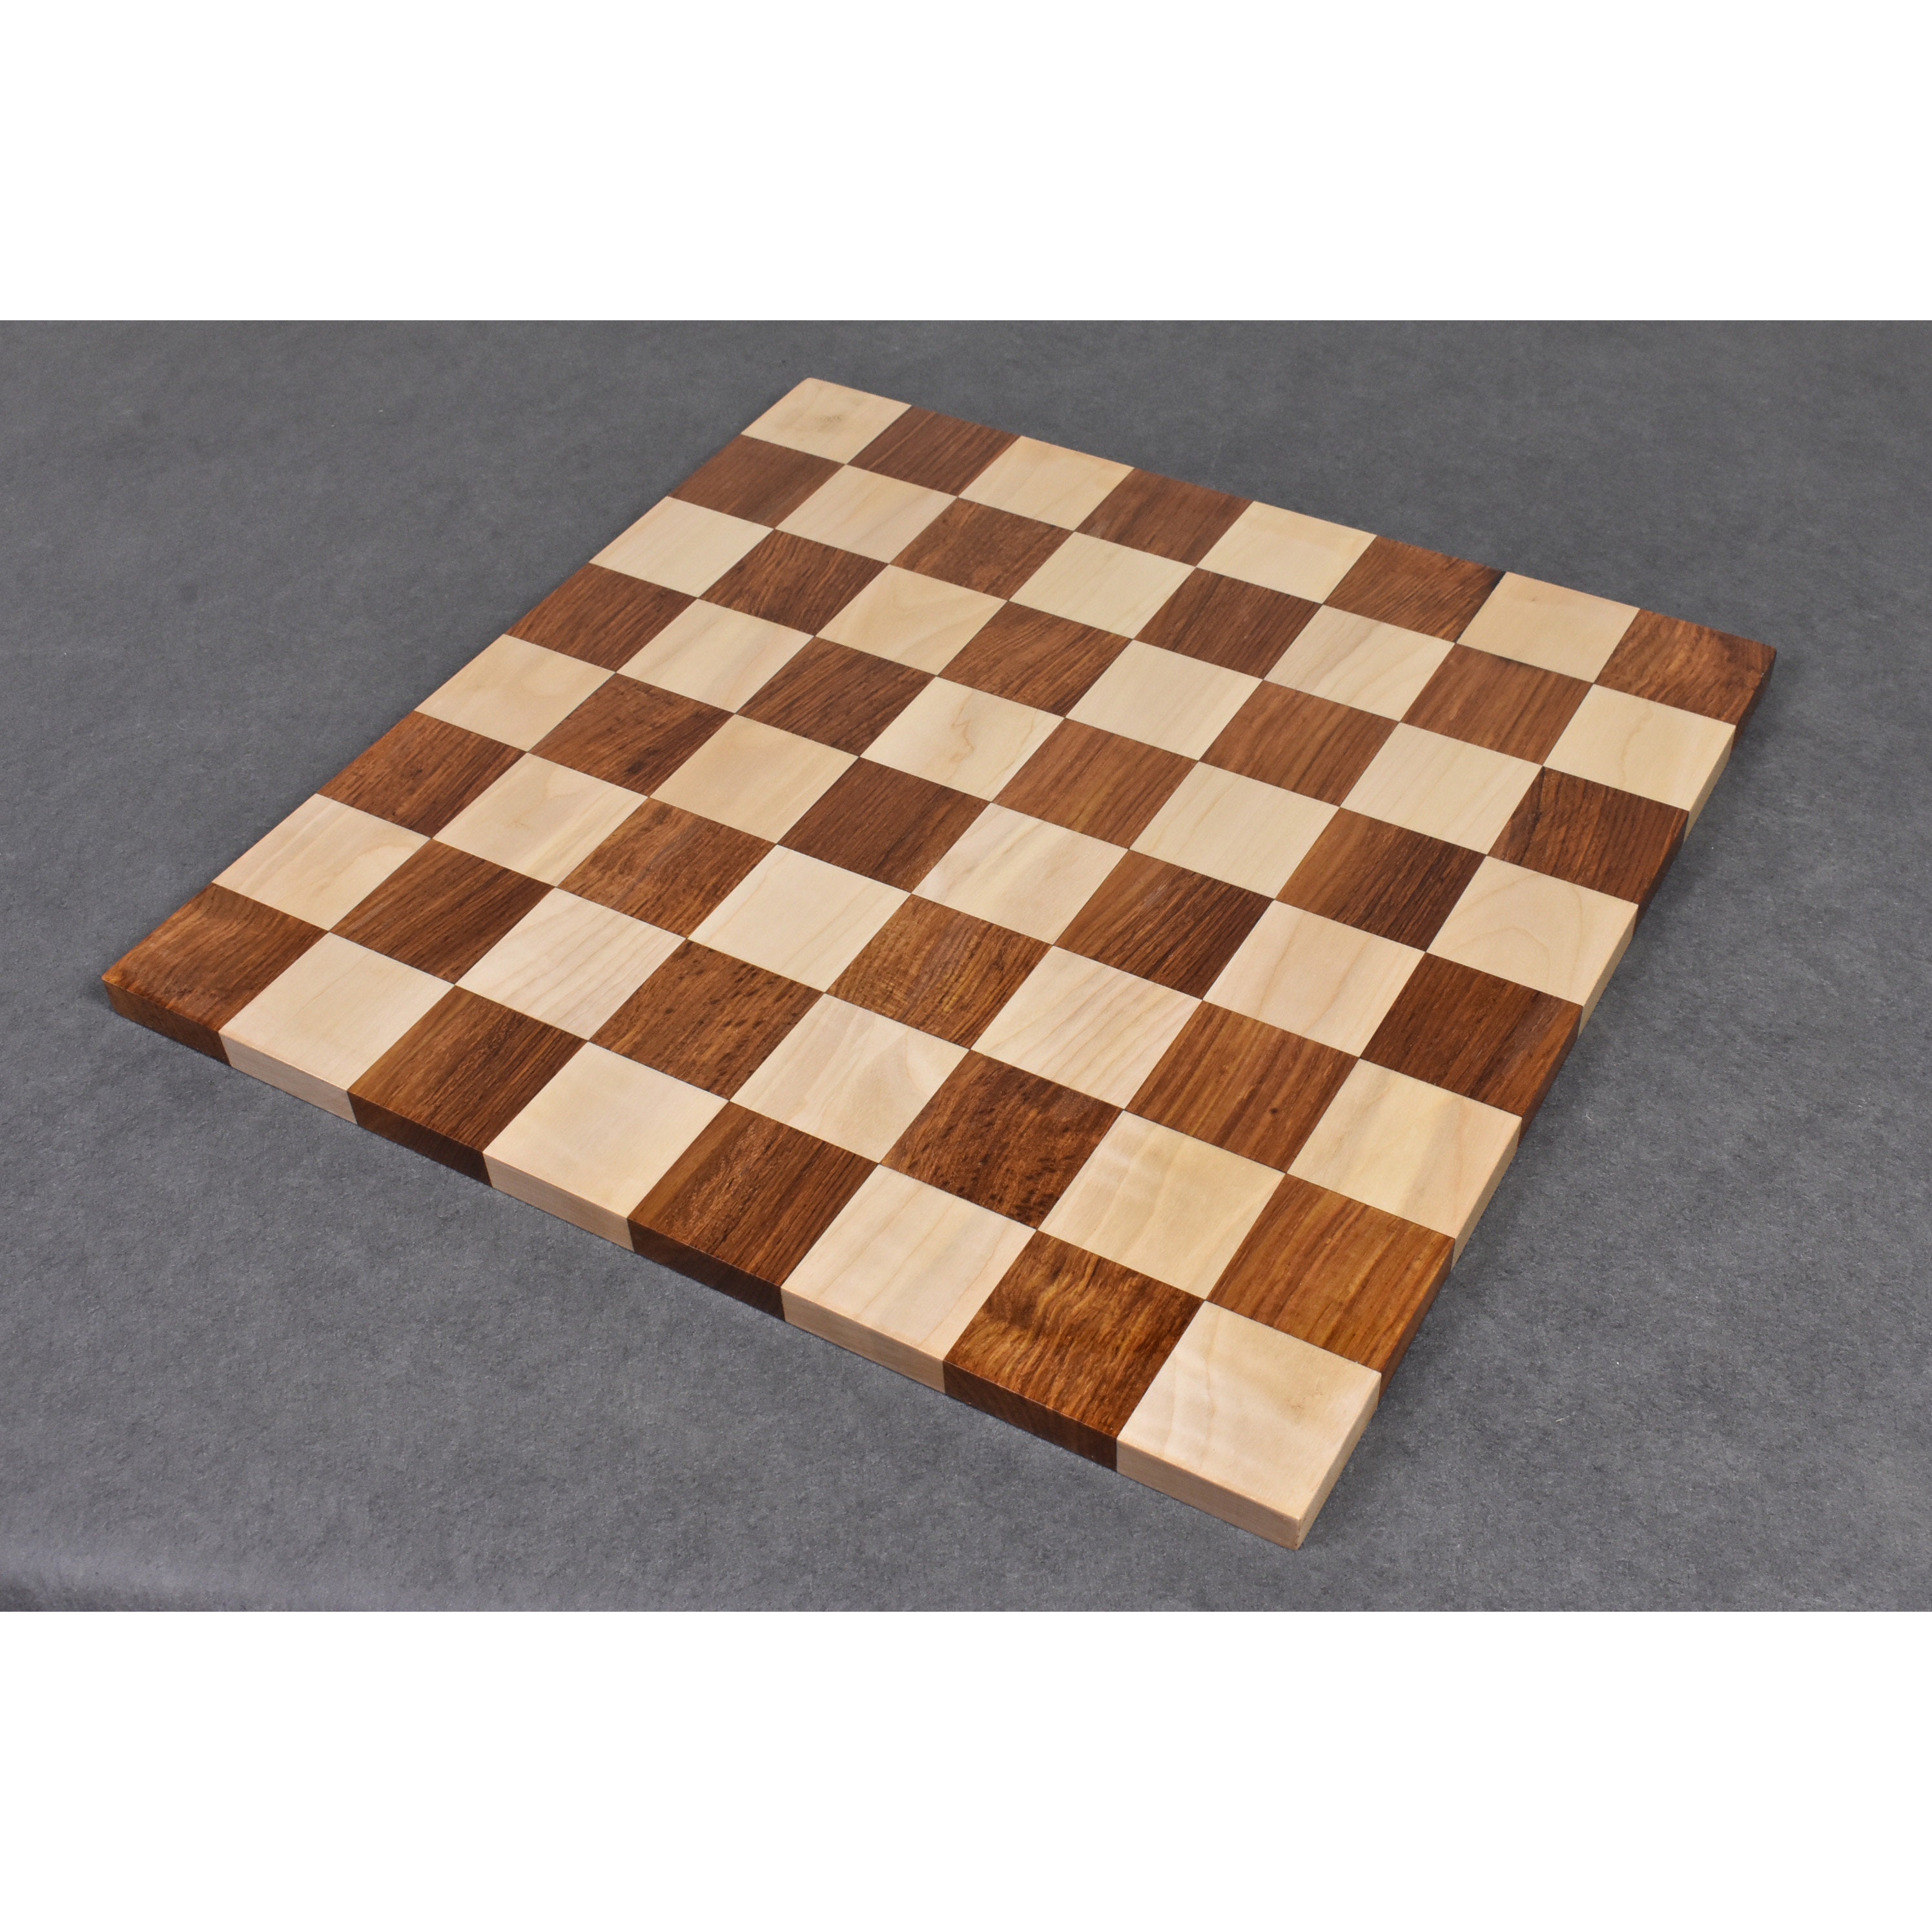 Peças de xadrez Staunton Excellence - Rei 9,8 cm, pesadas